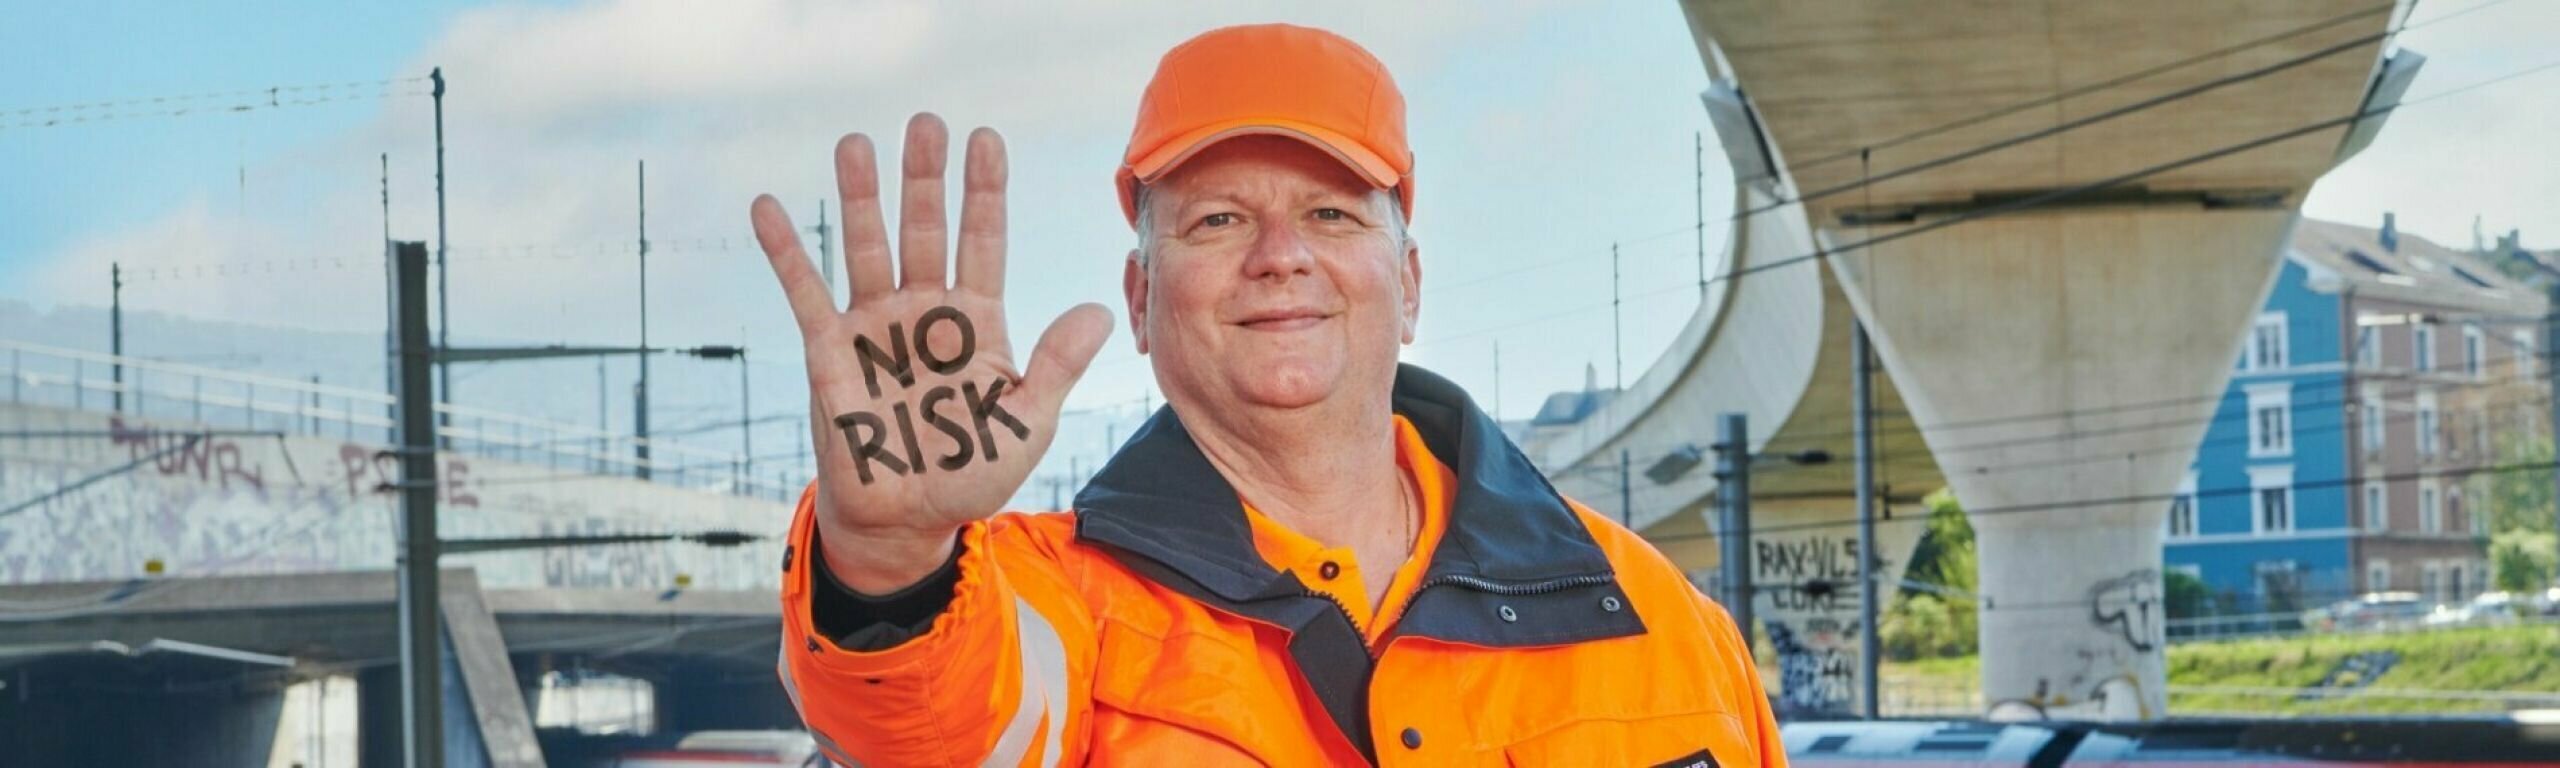 Uomo in abiti da lavoro tende la mano con la scritta "No Risk".